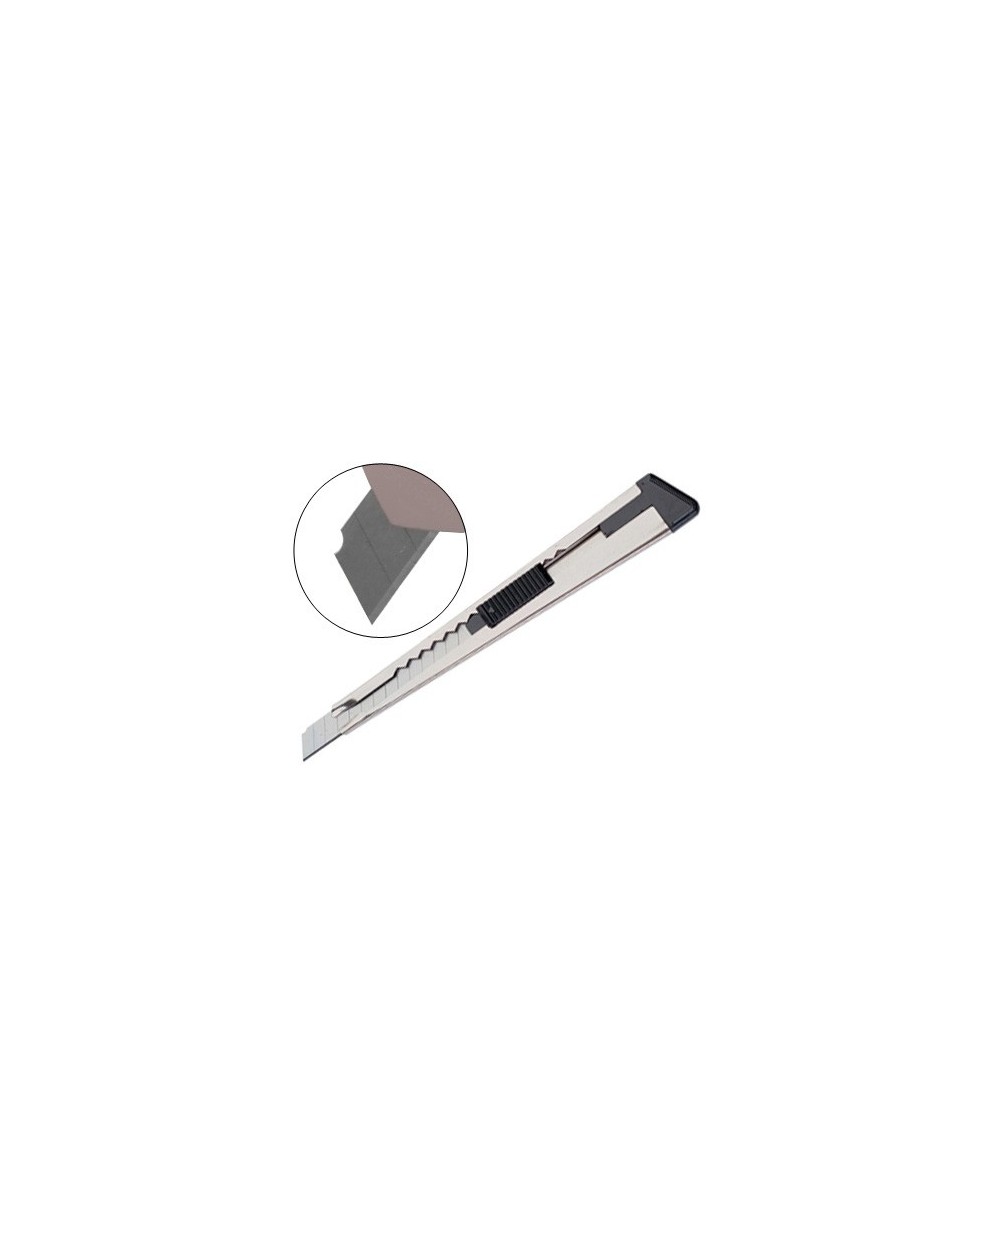 Cuter metalico q connect con funda cuchilla estrecha